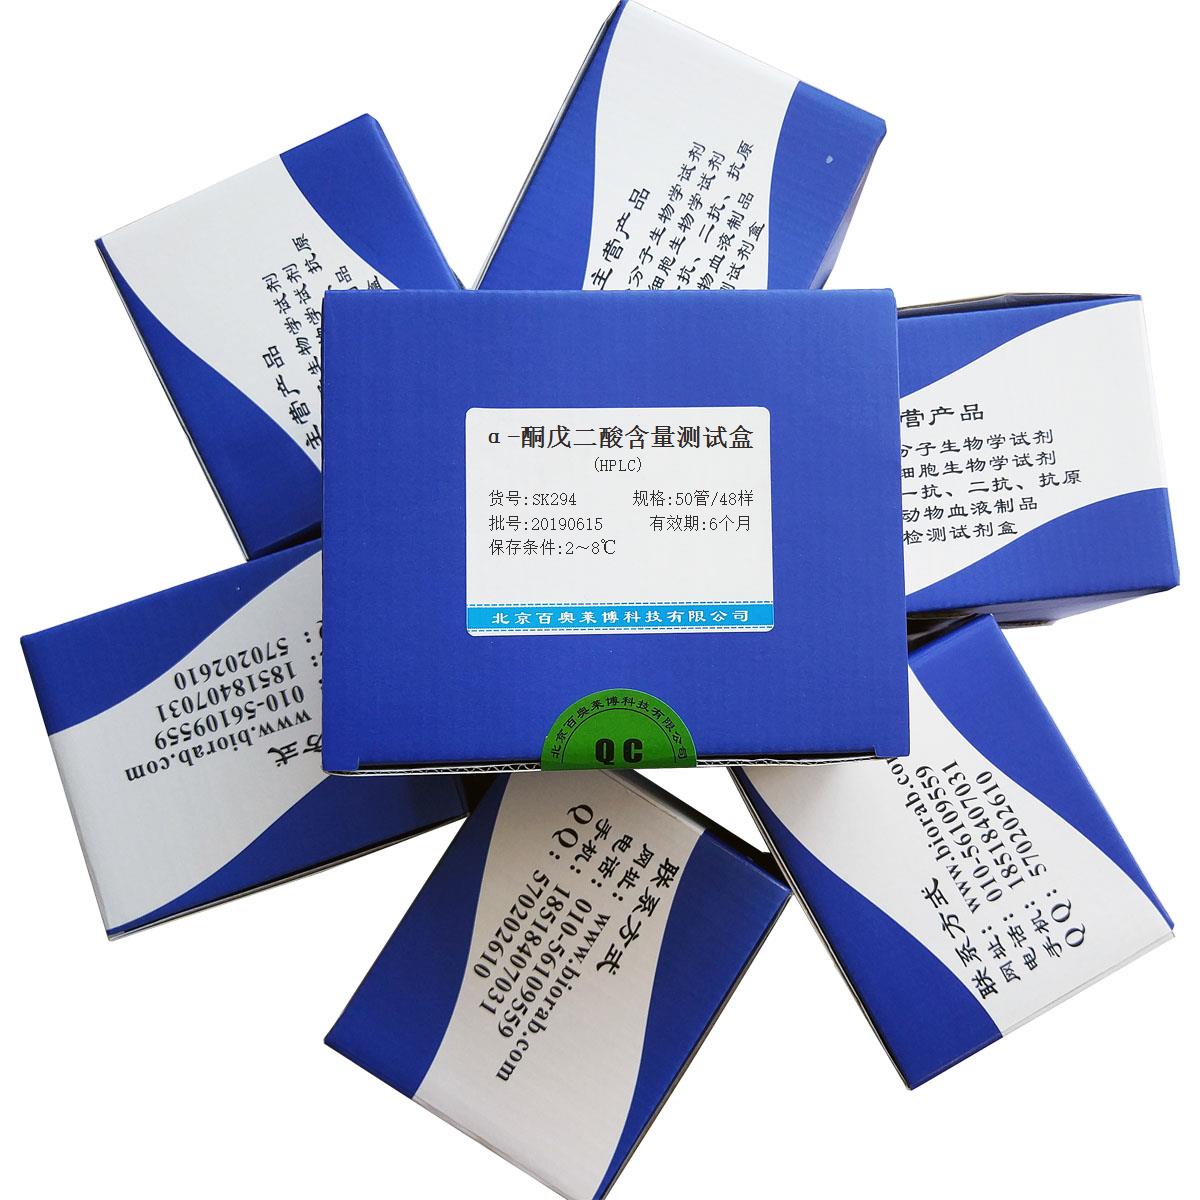 α-酮戊二酸含量测试盒(HPLC)北京品牌